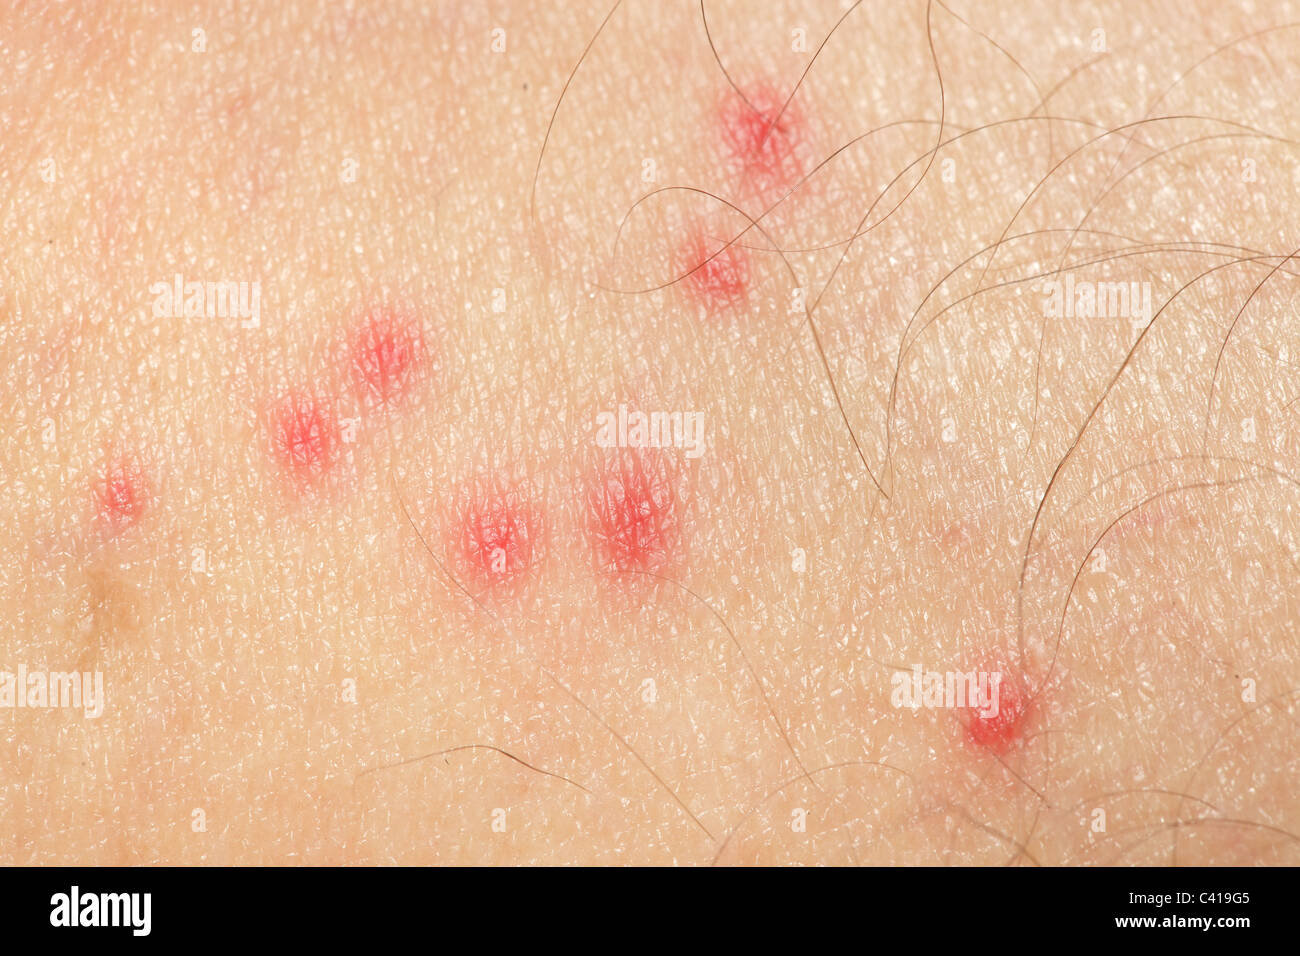 Allergia Pelle Immagini e Fotos Stock - Alamy